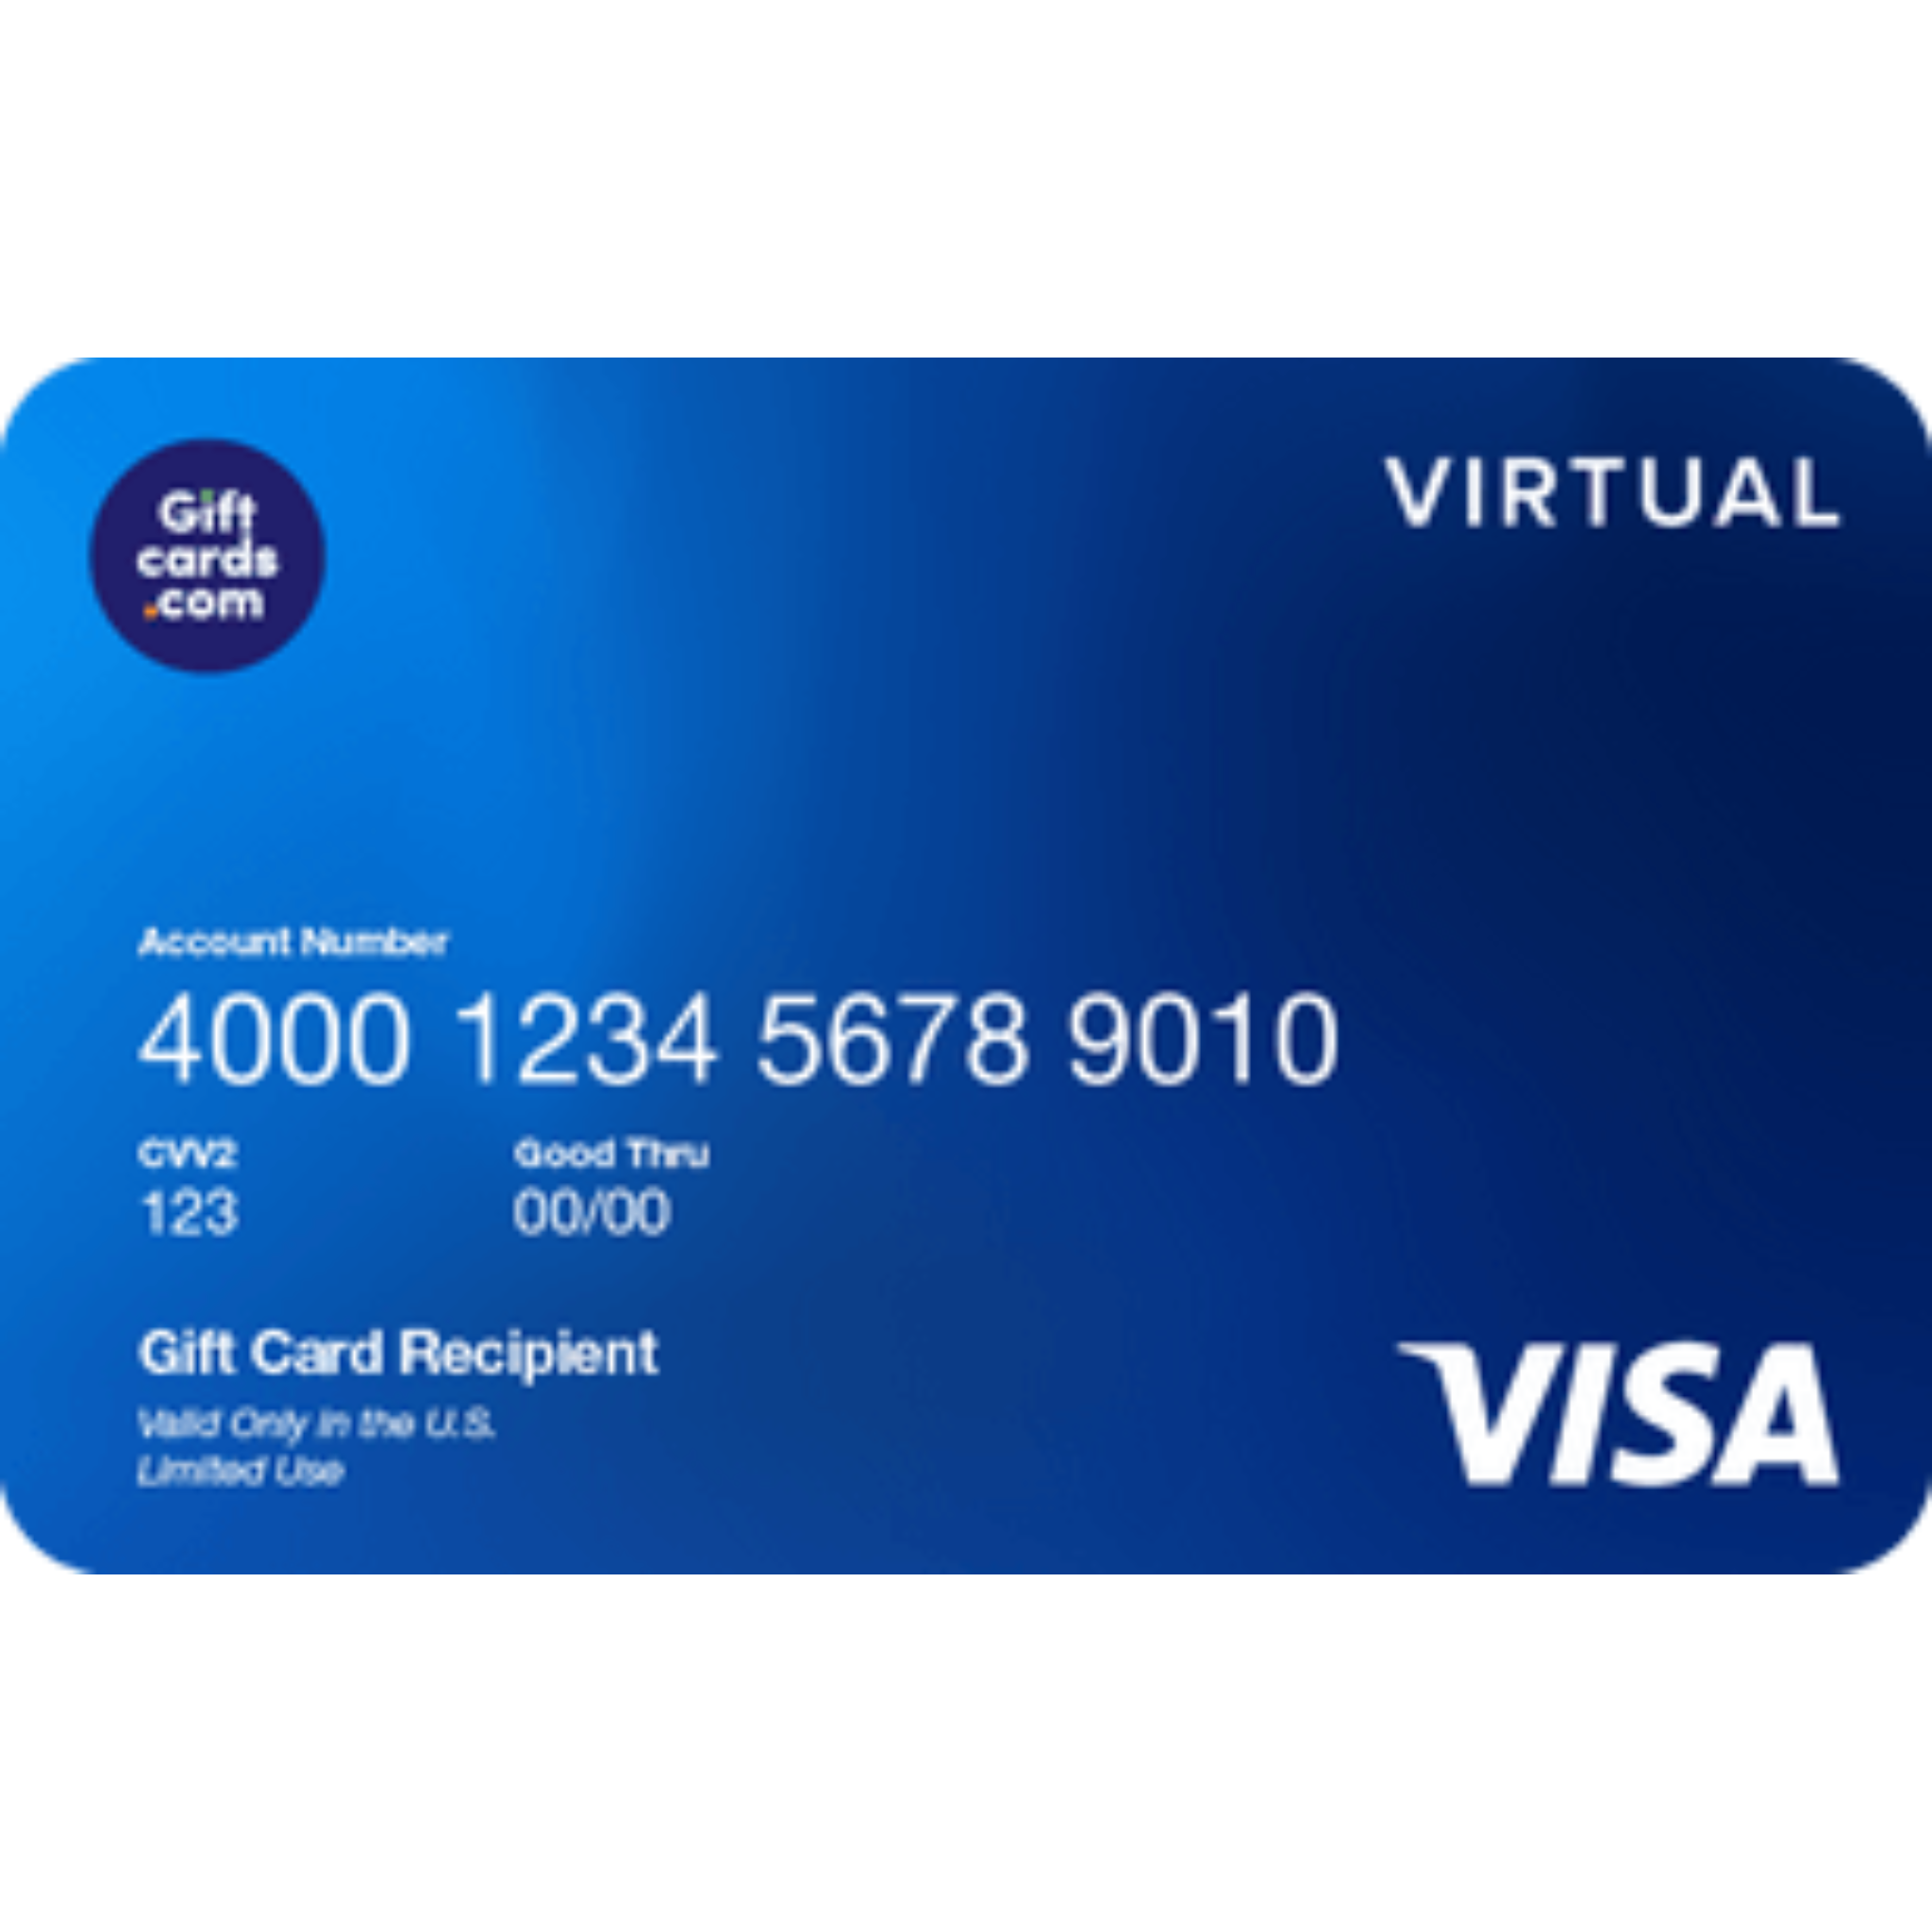 Get a $100 Visa Virtual eGift Card